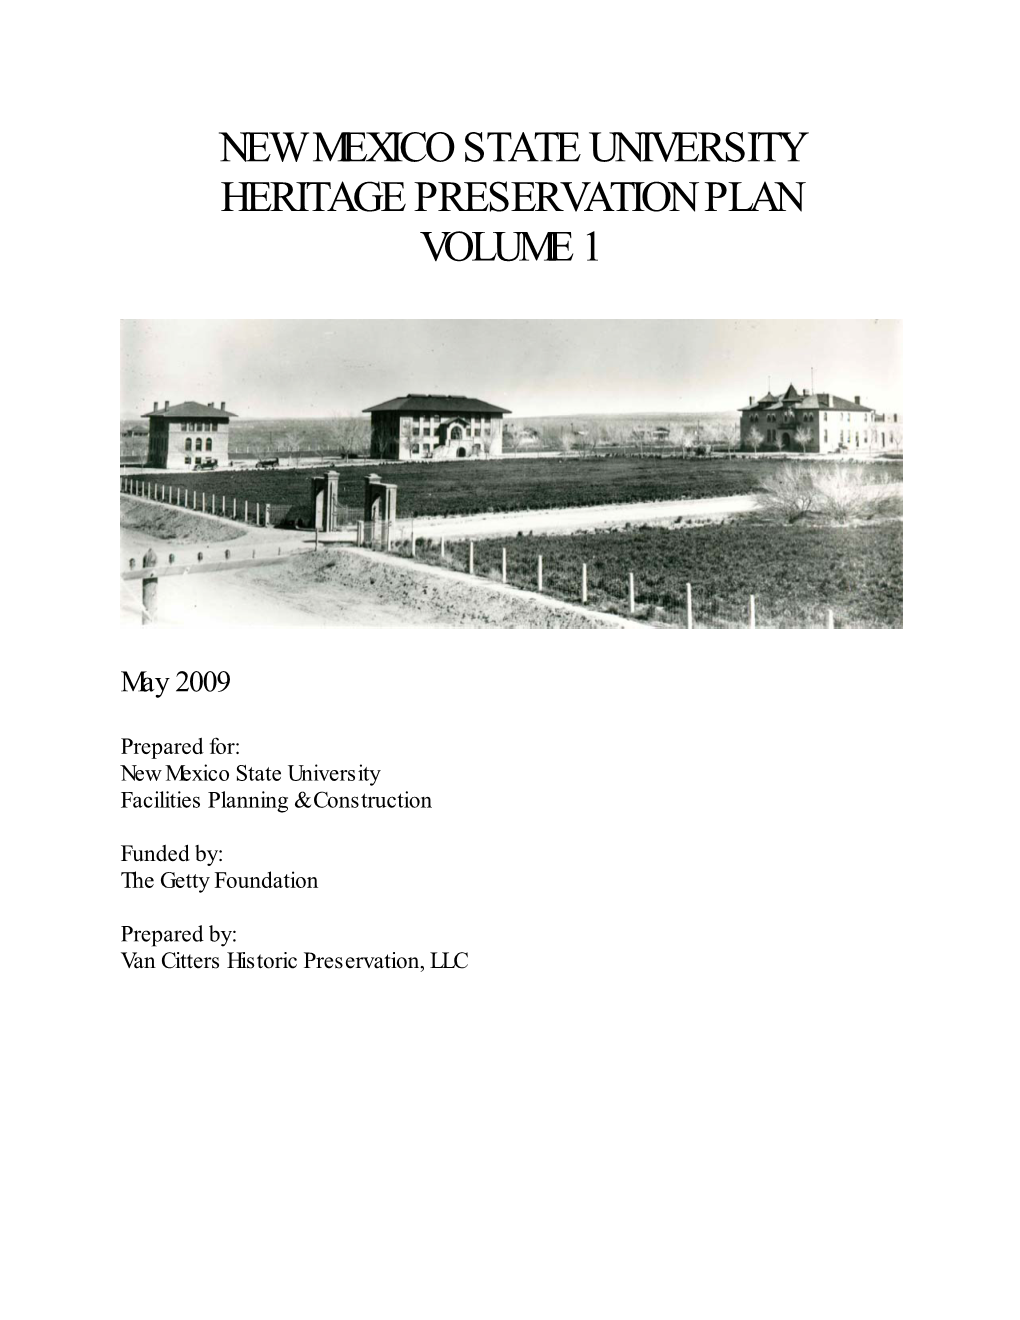 Heritage Preservation Plan Volume I